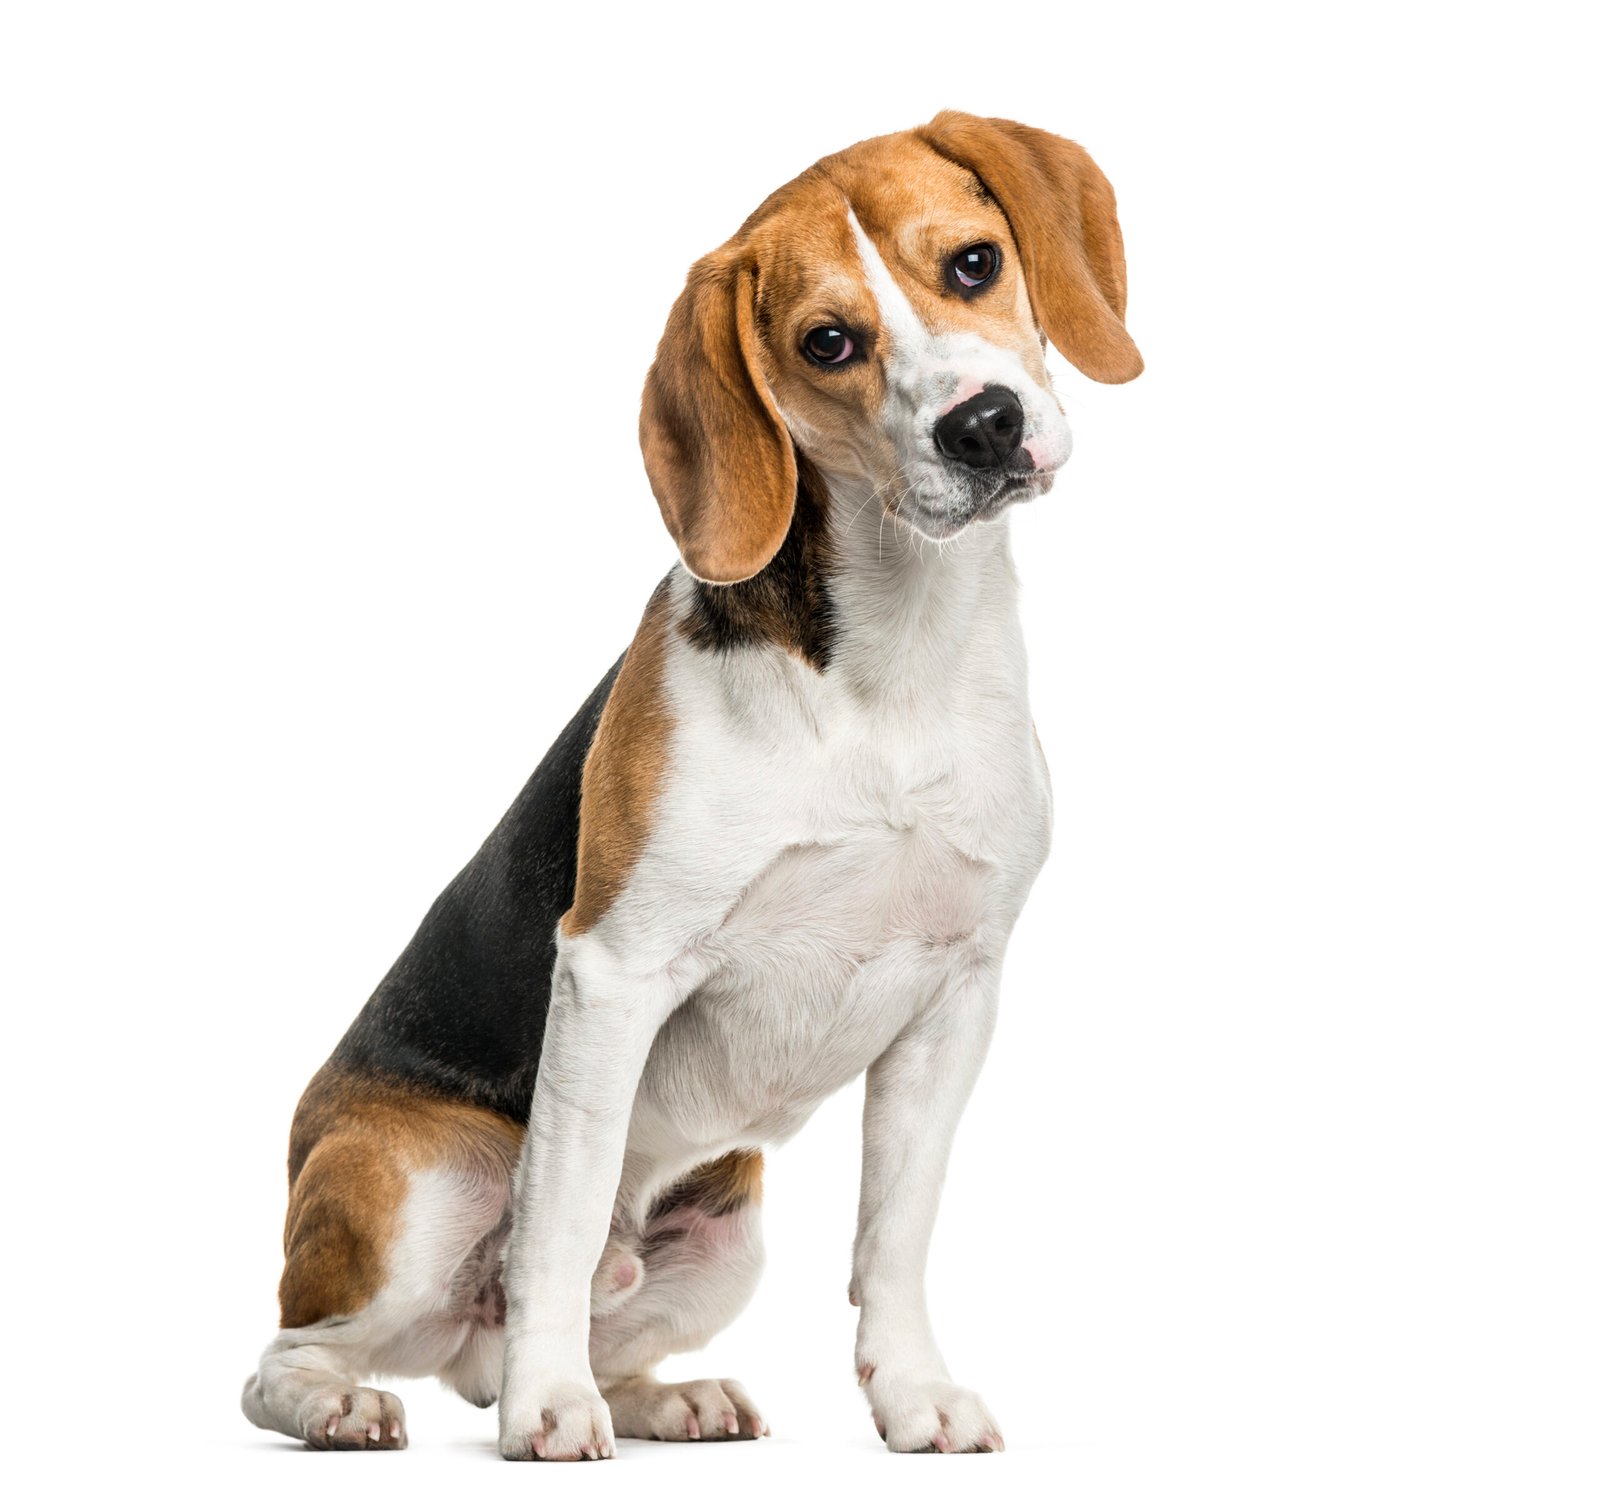 Beagle puppy care guide